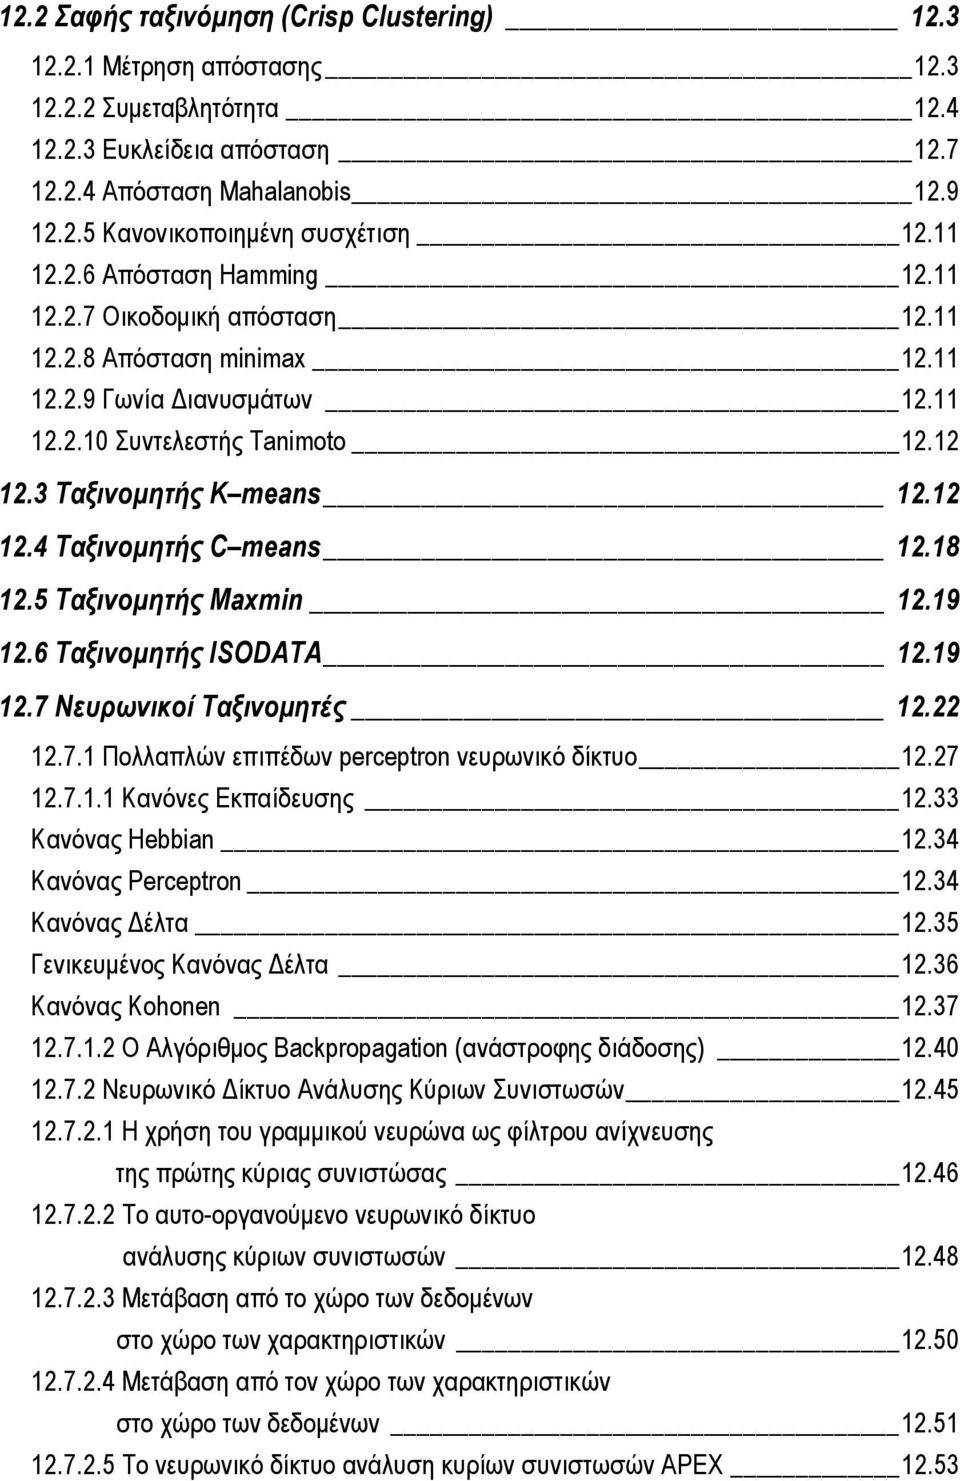 18 12.5 Ταξινομητής Maxmin 12.19 12.6 Ταξινομητής ISODATA 12.19 12.7 Νευρωνικοί Ταξινομητές 12.22 12.7.1 Πολλαπλών επιπέδων perceptron νευρωνικό δίκτυο 12.27 12.7.1.1 Κανόνες Εκπαίδευσης 12.